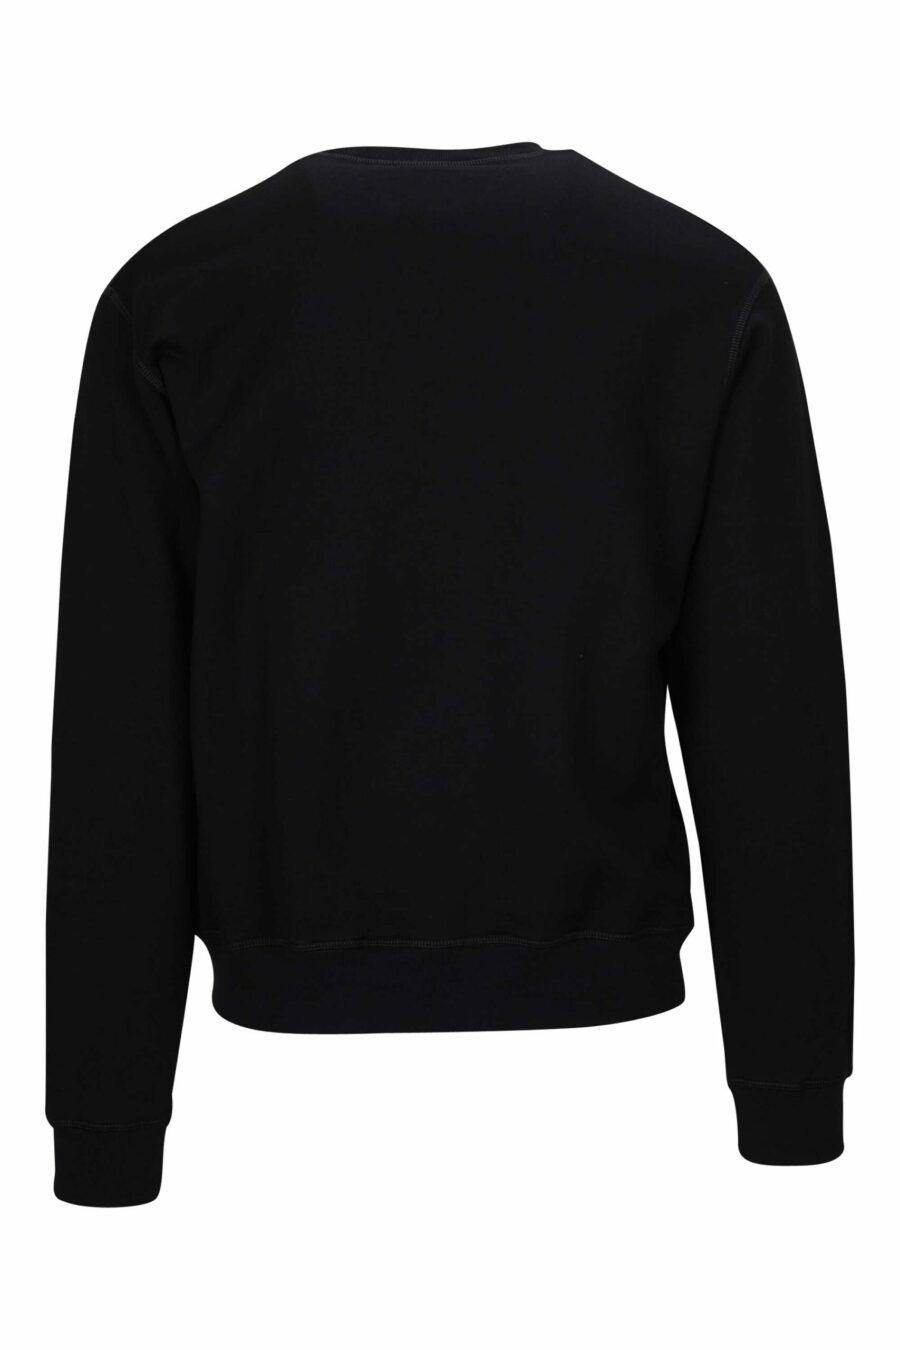 Schwarzes Sweatshirt mit neongrünem unscharfem "Icon" Maxilogo - 8054148360863 1 skaliert